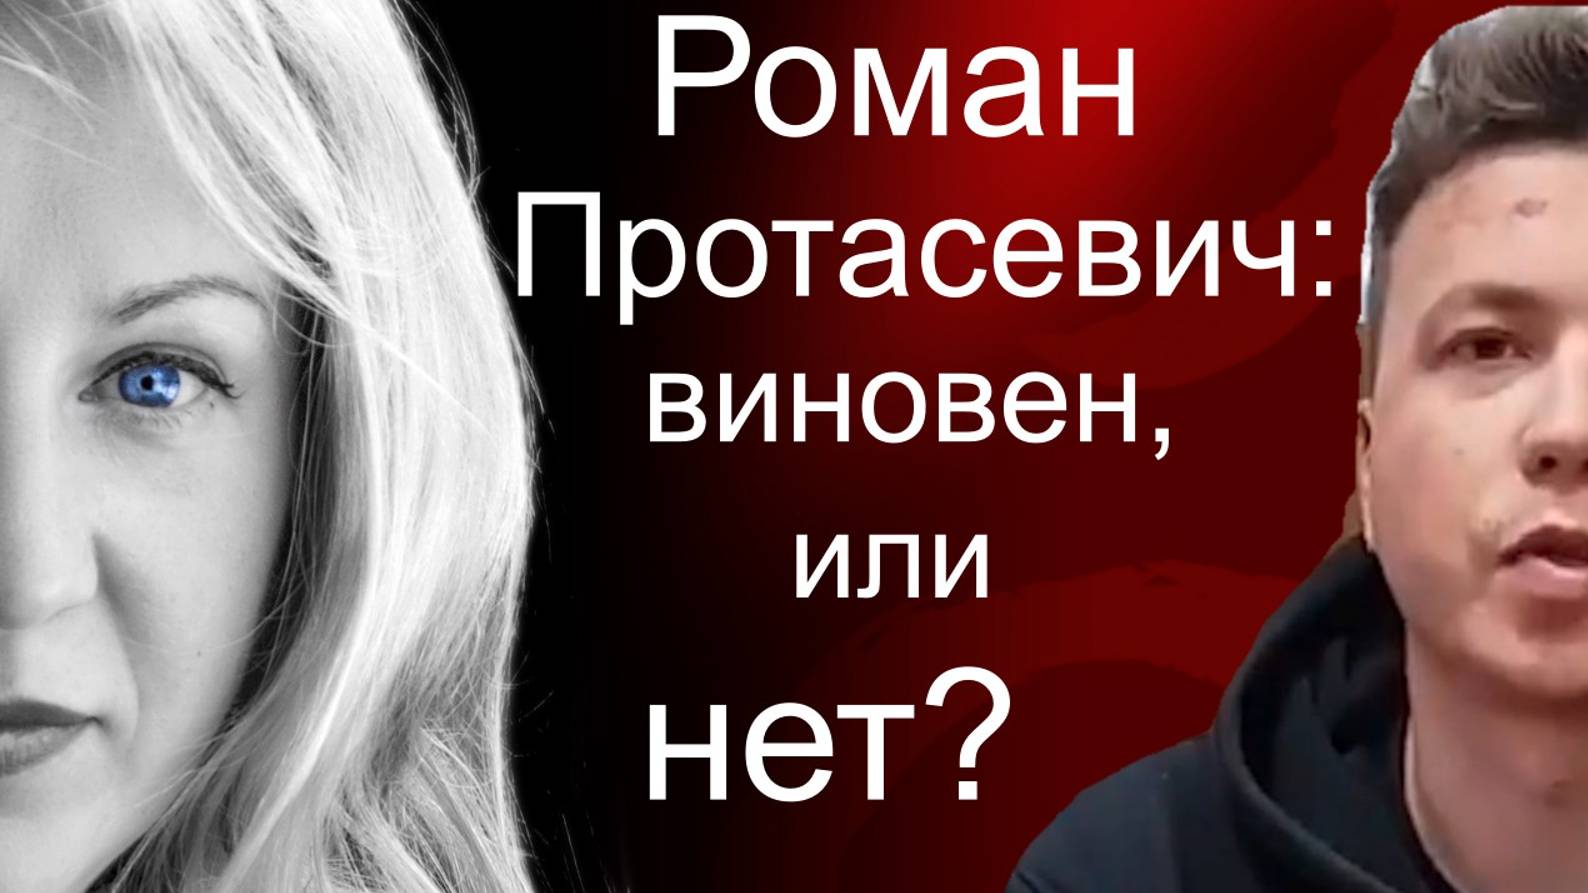 Роман Протасевич: виновен или нет?